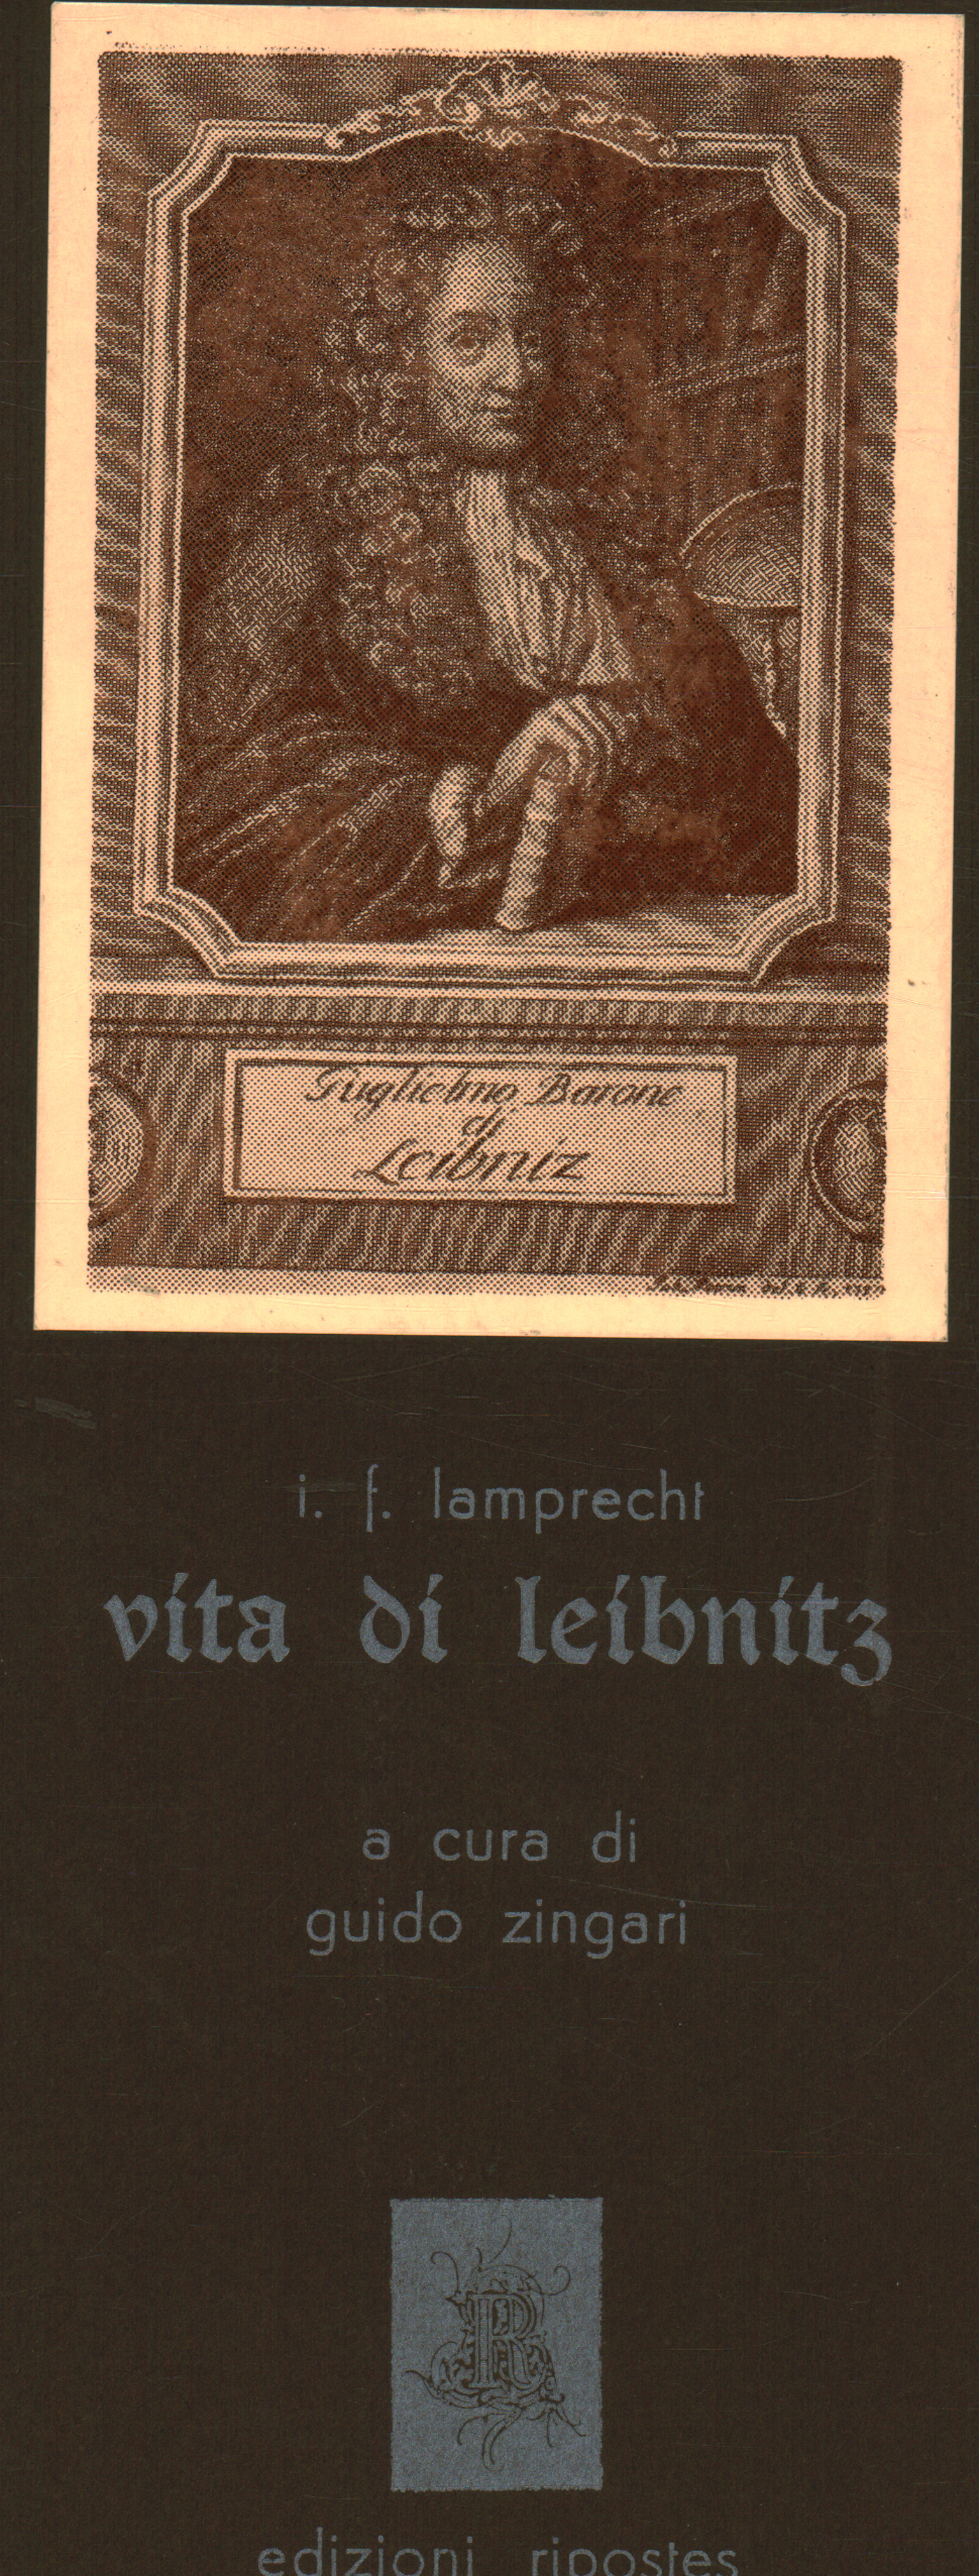 La vida de Leibnitz, I. F. Lamprecht